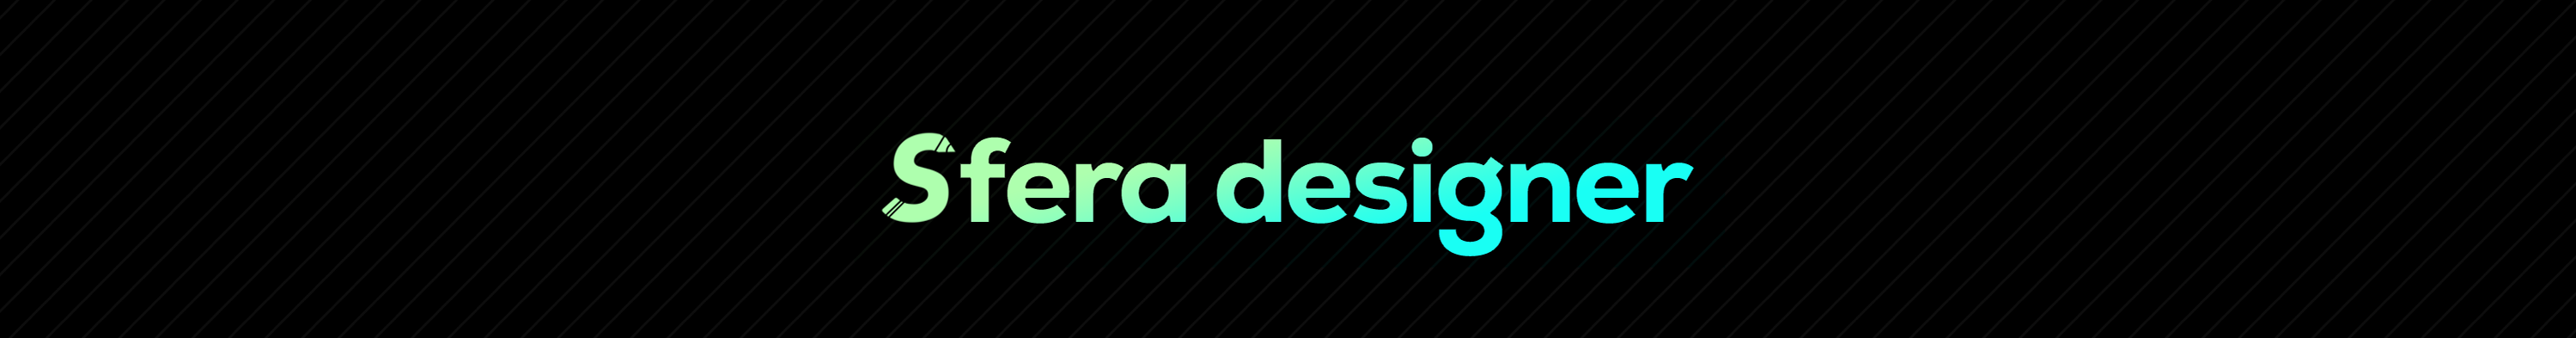 Sfera Designer's profile banner